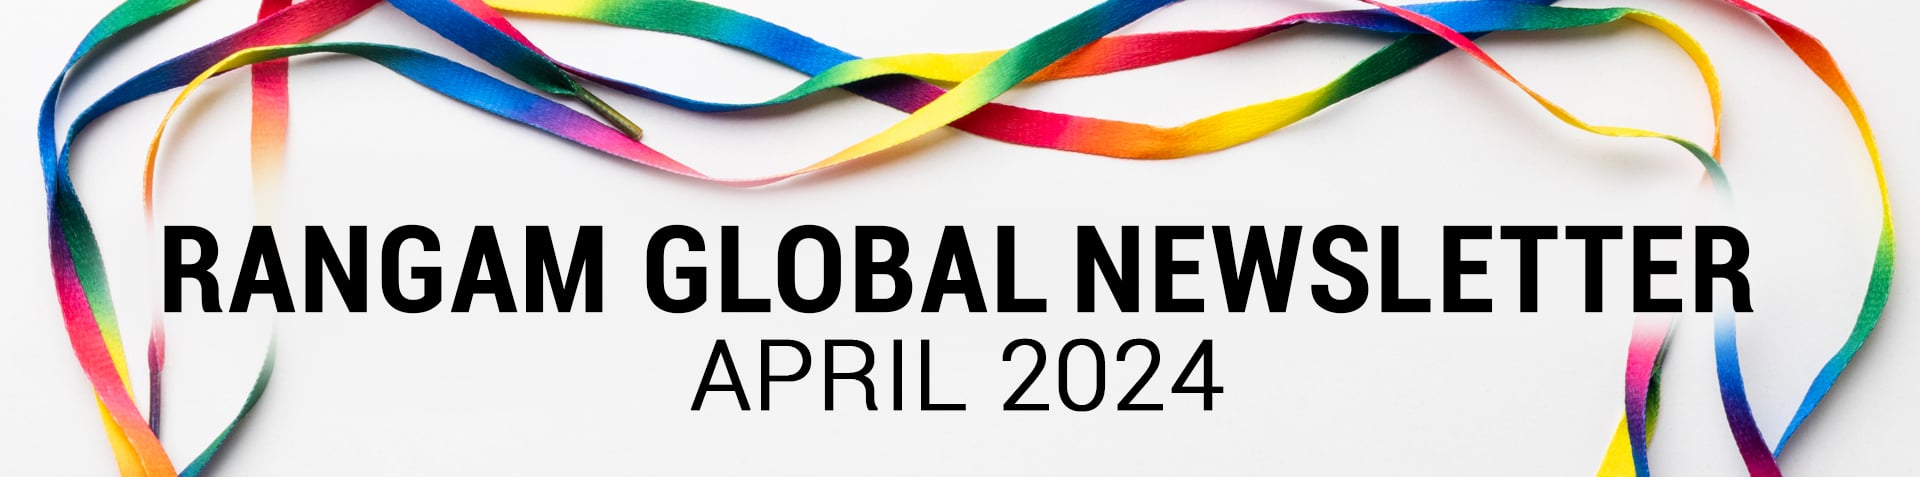 Rangam Global Newsletter April 2024